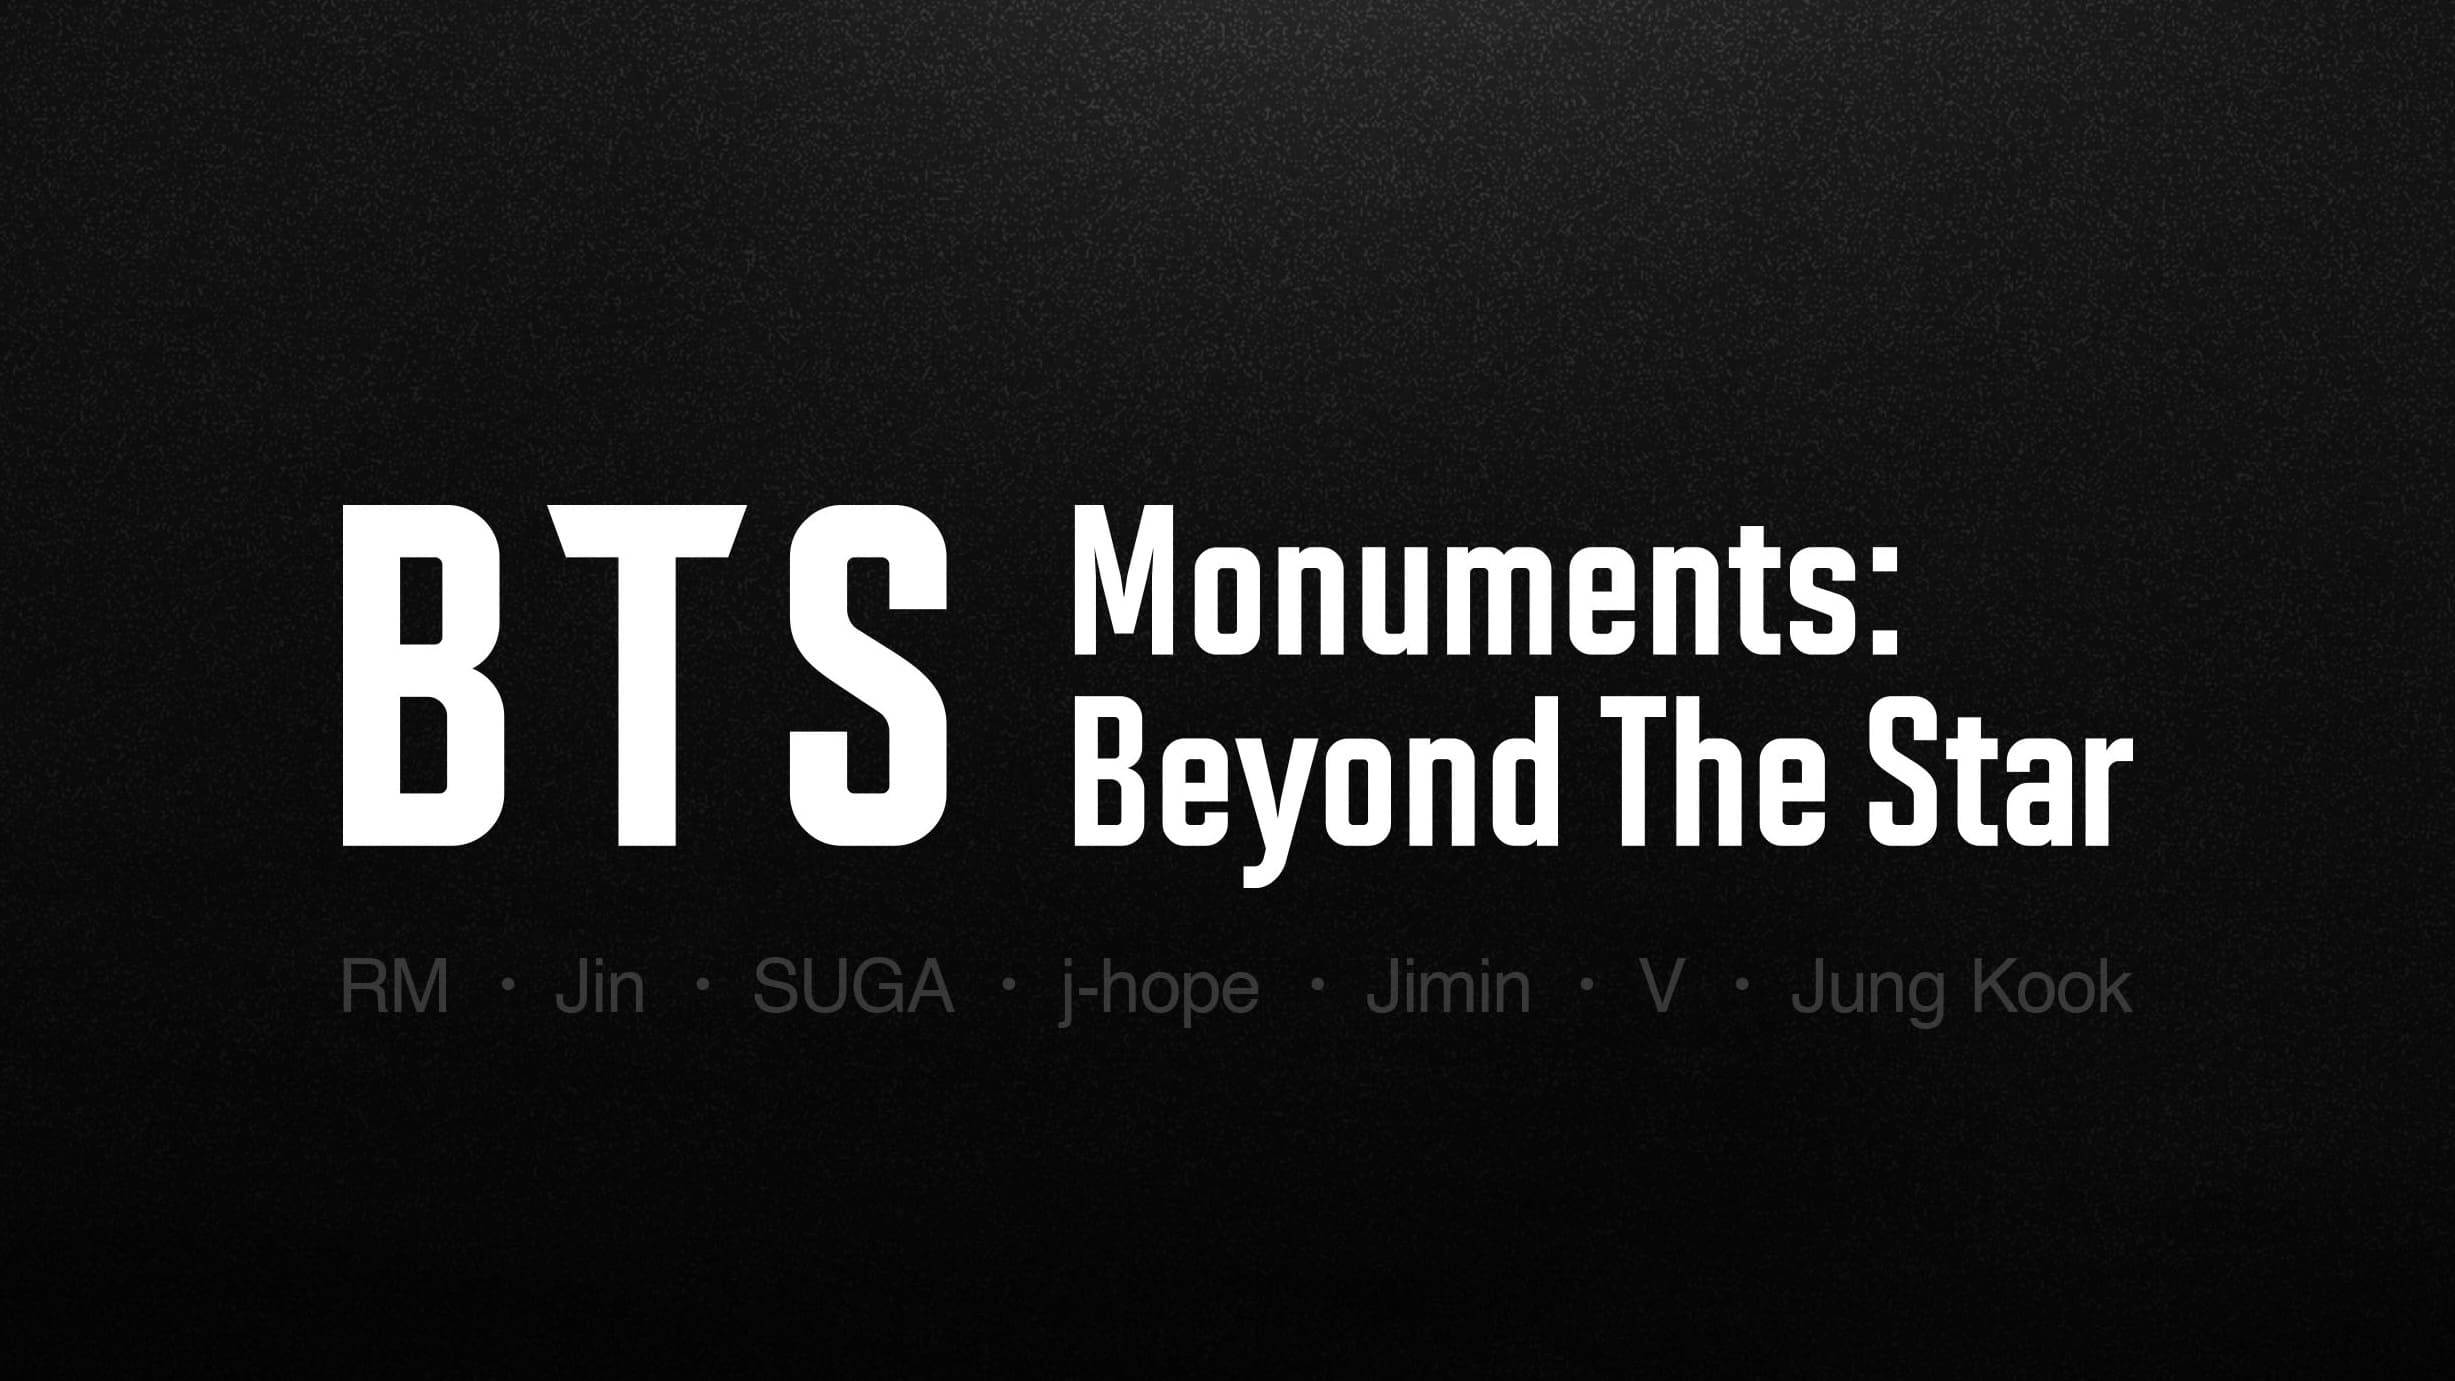 Cubierta de BTS Monuments: Beyond the Star